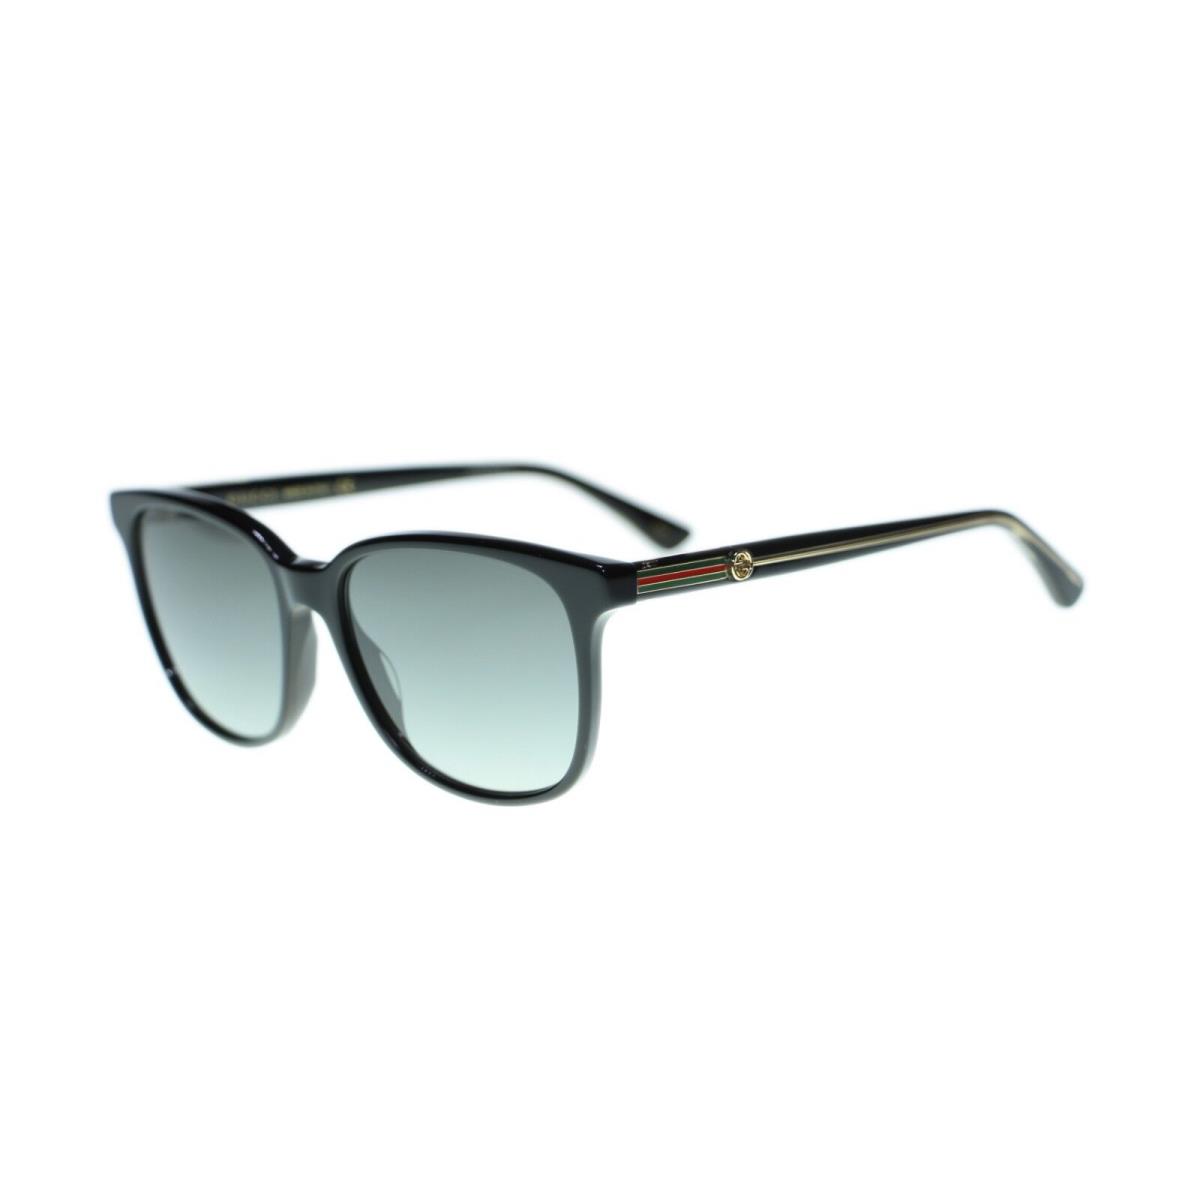 Gucci Women`s GG0376S Fashion Square Sunglasses 54mm - Brown Frame